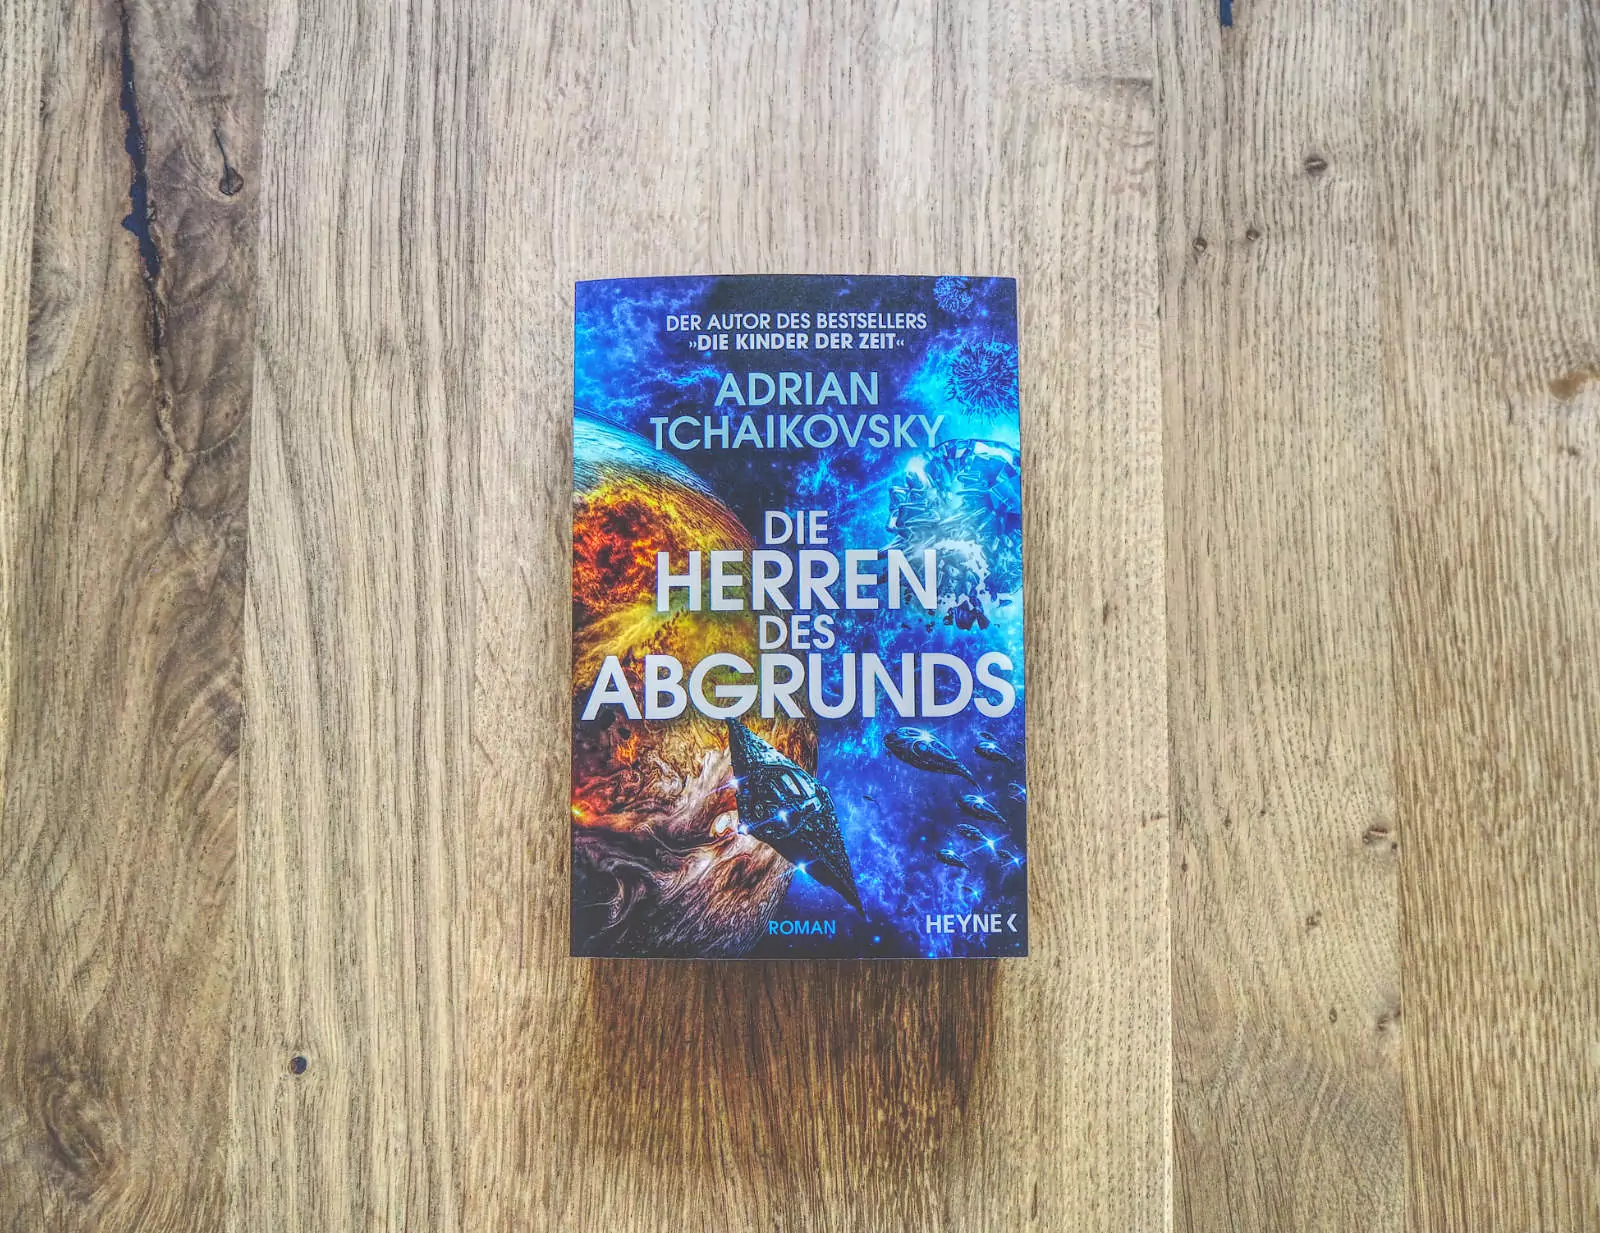 Auf einer Holzfläche liegt eine deutsche Ausgabe des Buches „Die Herren des Abgrunds“ von Adrian Tschaikowsky mit einem farbenfrohen Cover mit kosmischem Thema.